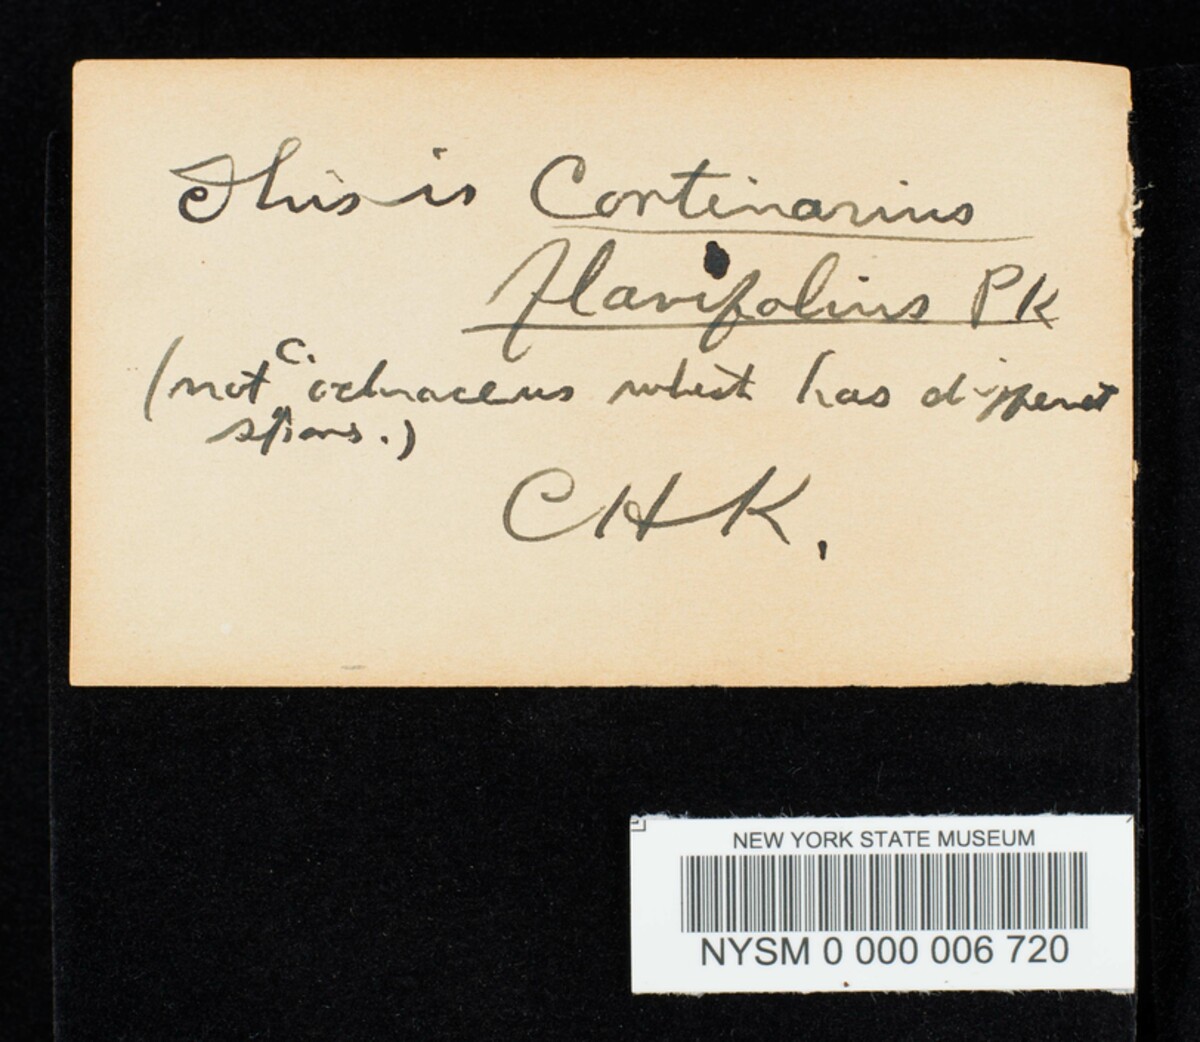 Cortinarius ochraceus image